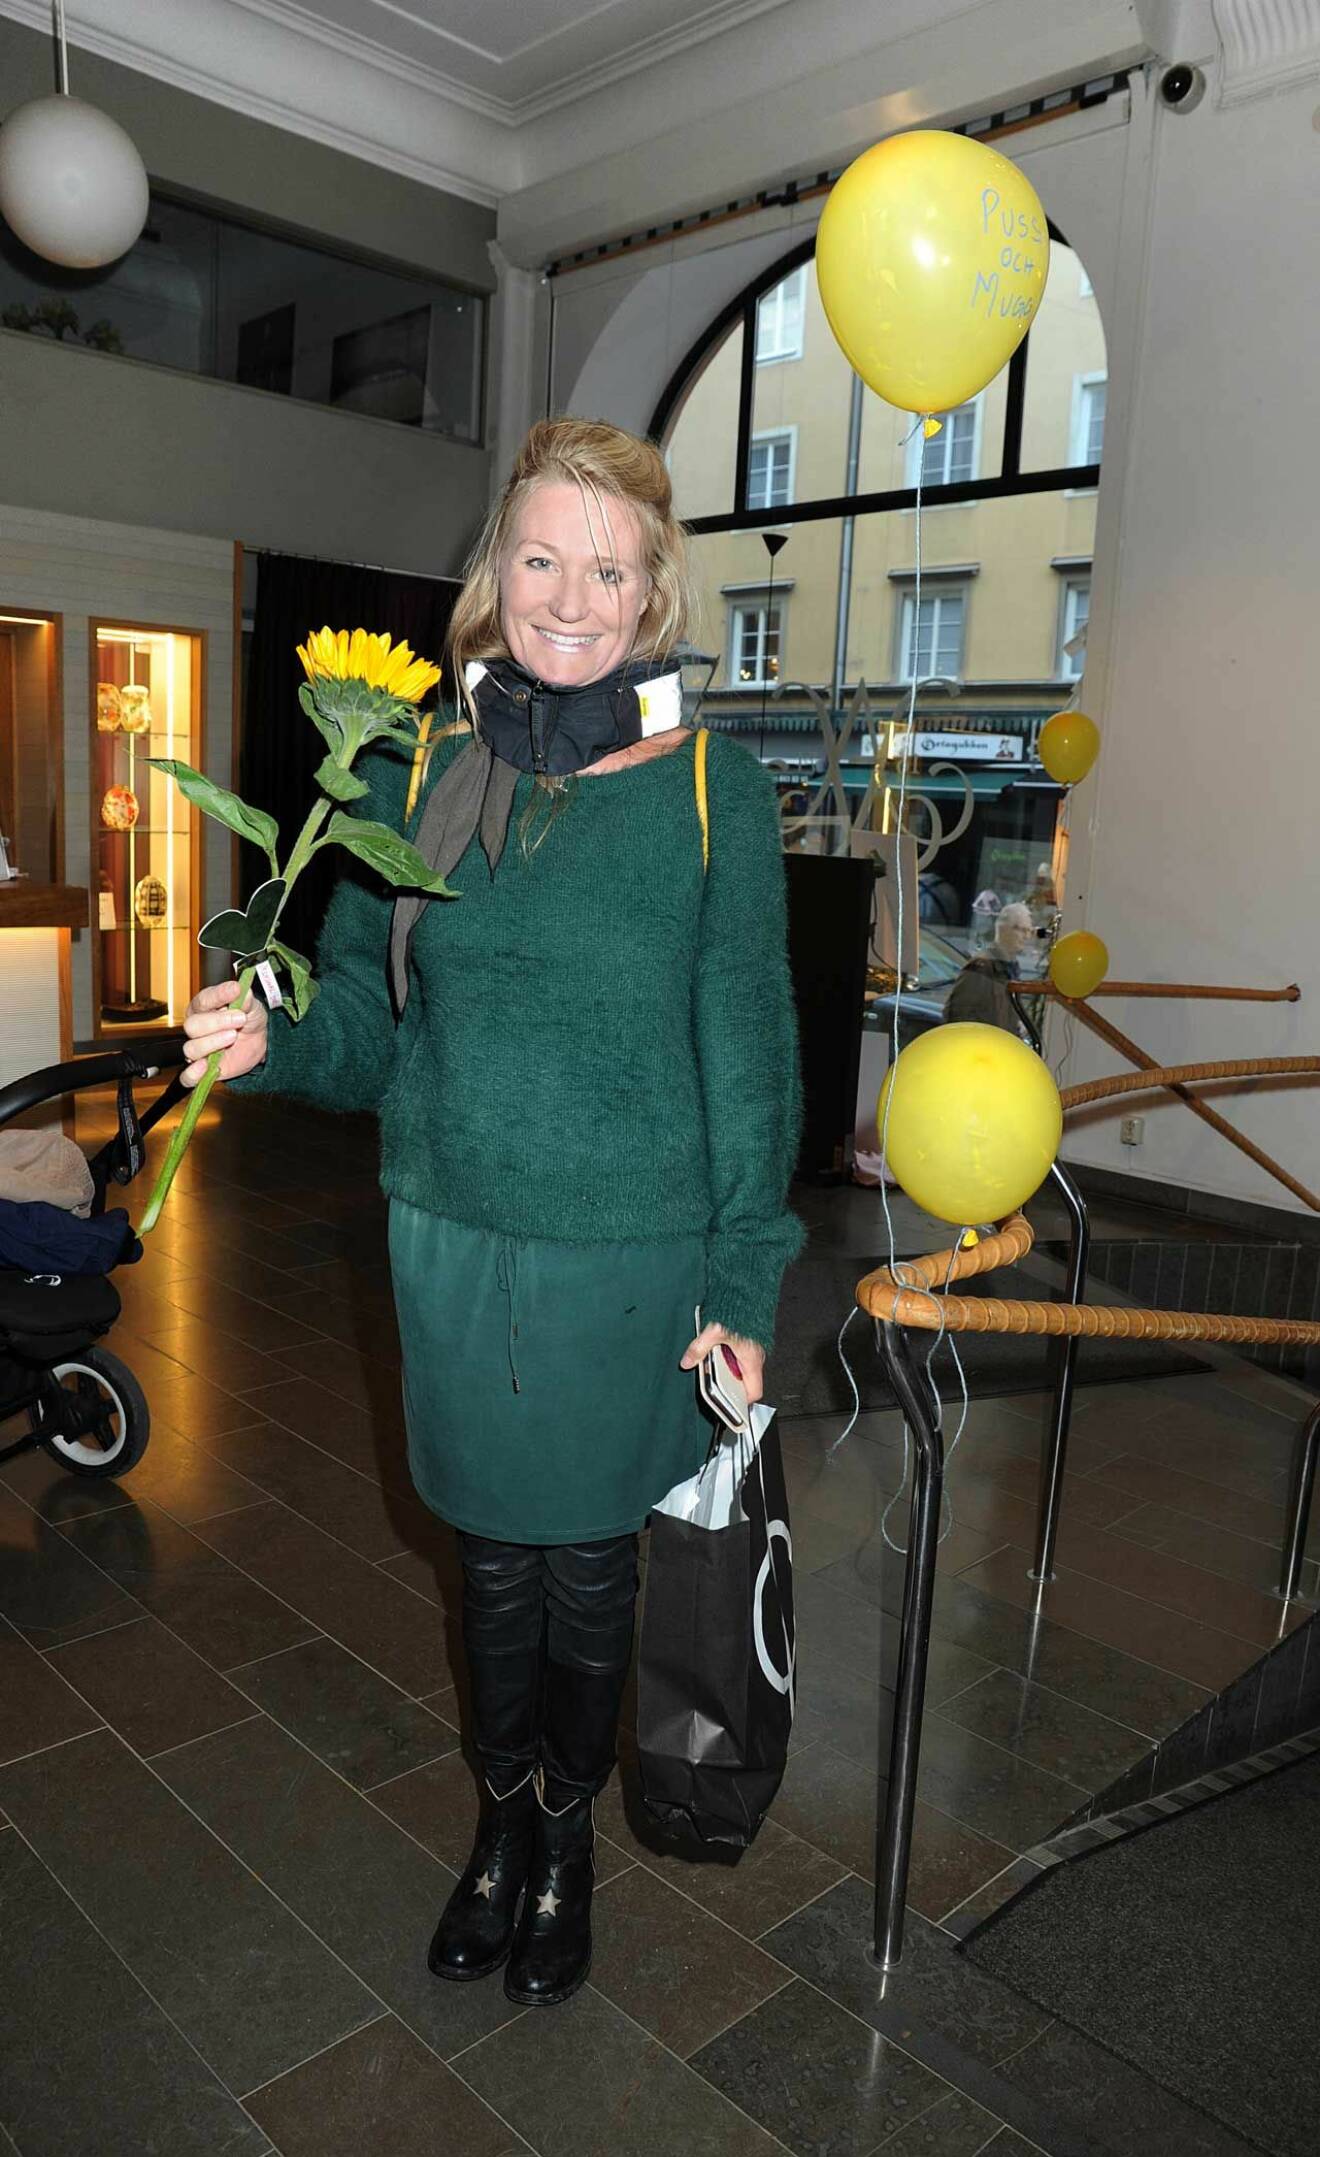 Reklamaren Emilie Röhl kom med en vacker solros till författarinnan.